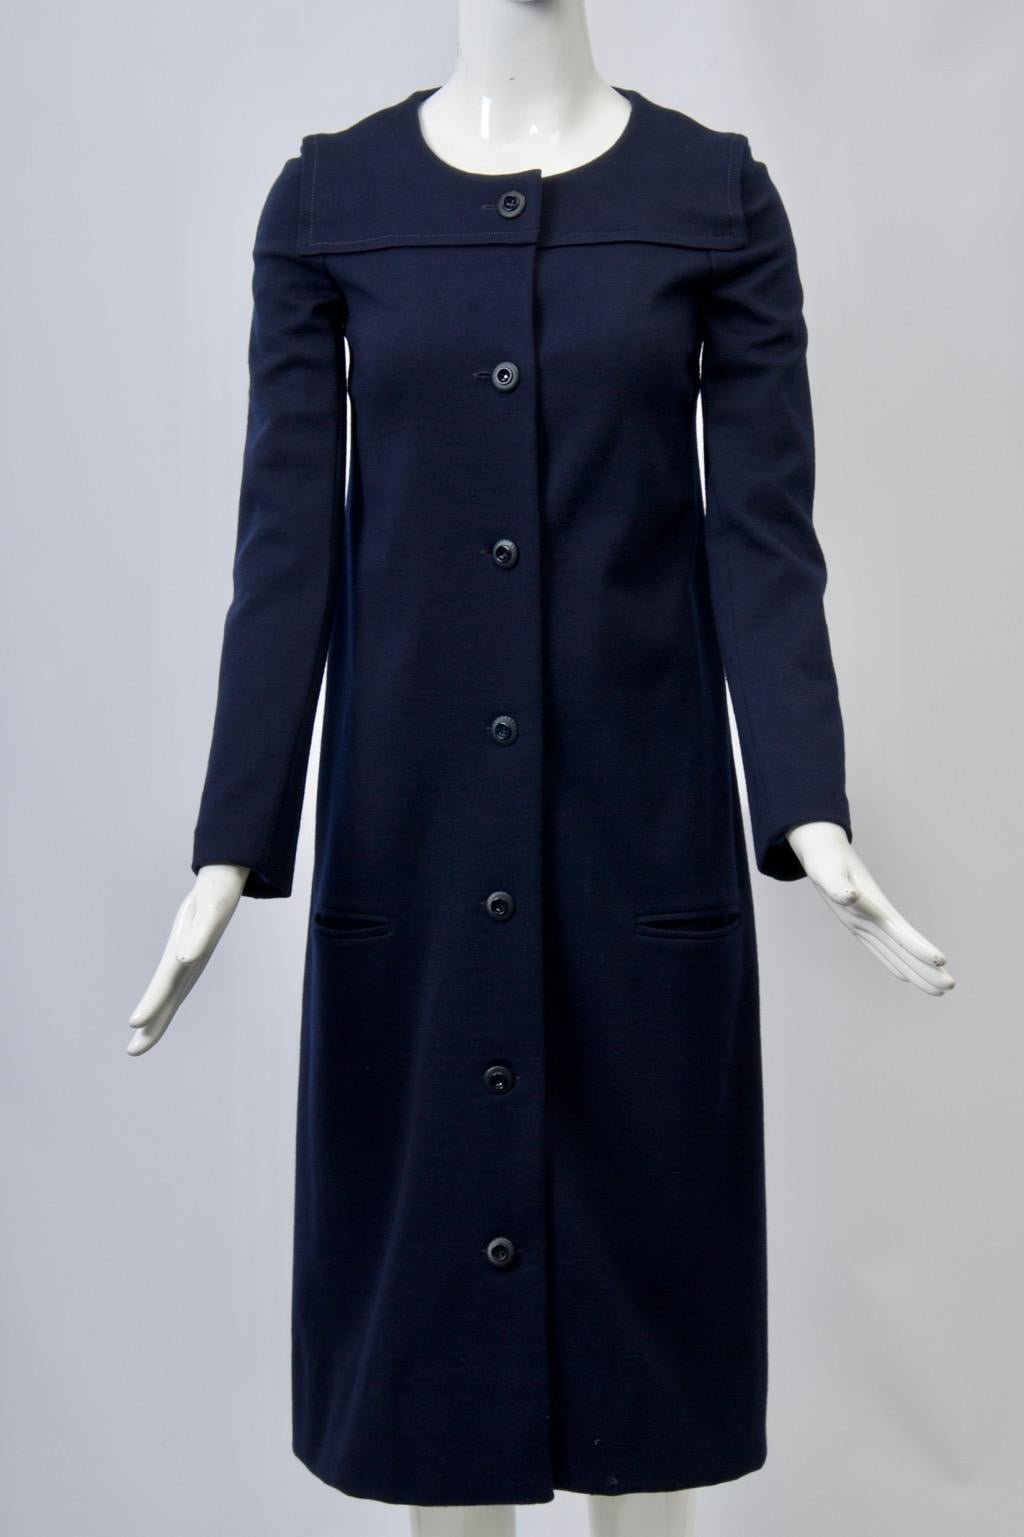 ensemble robe et manteau des années 1970 en maille de laine marine par Sonia Rykiel. Ce manteau étroit présente un détail de jaune d'œuf surpiqué, une encolure ronde et une fermeture à simple boutonnage sur le devant. La robe à manches longues